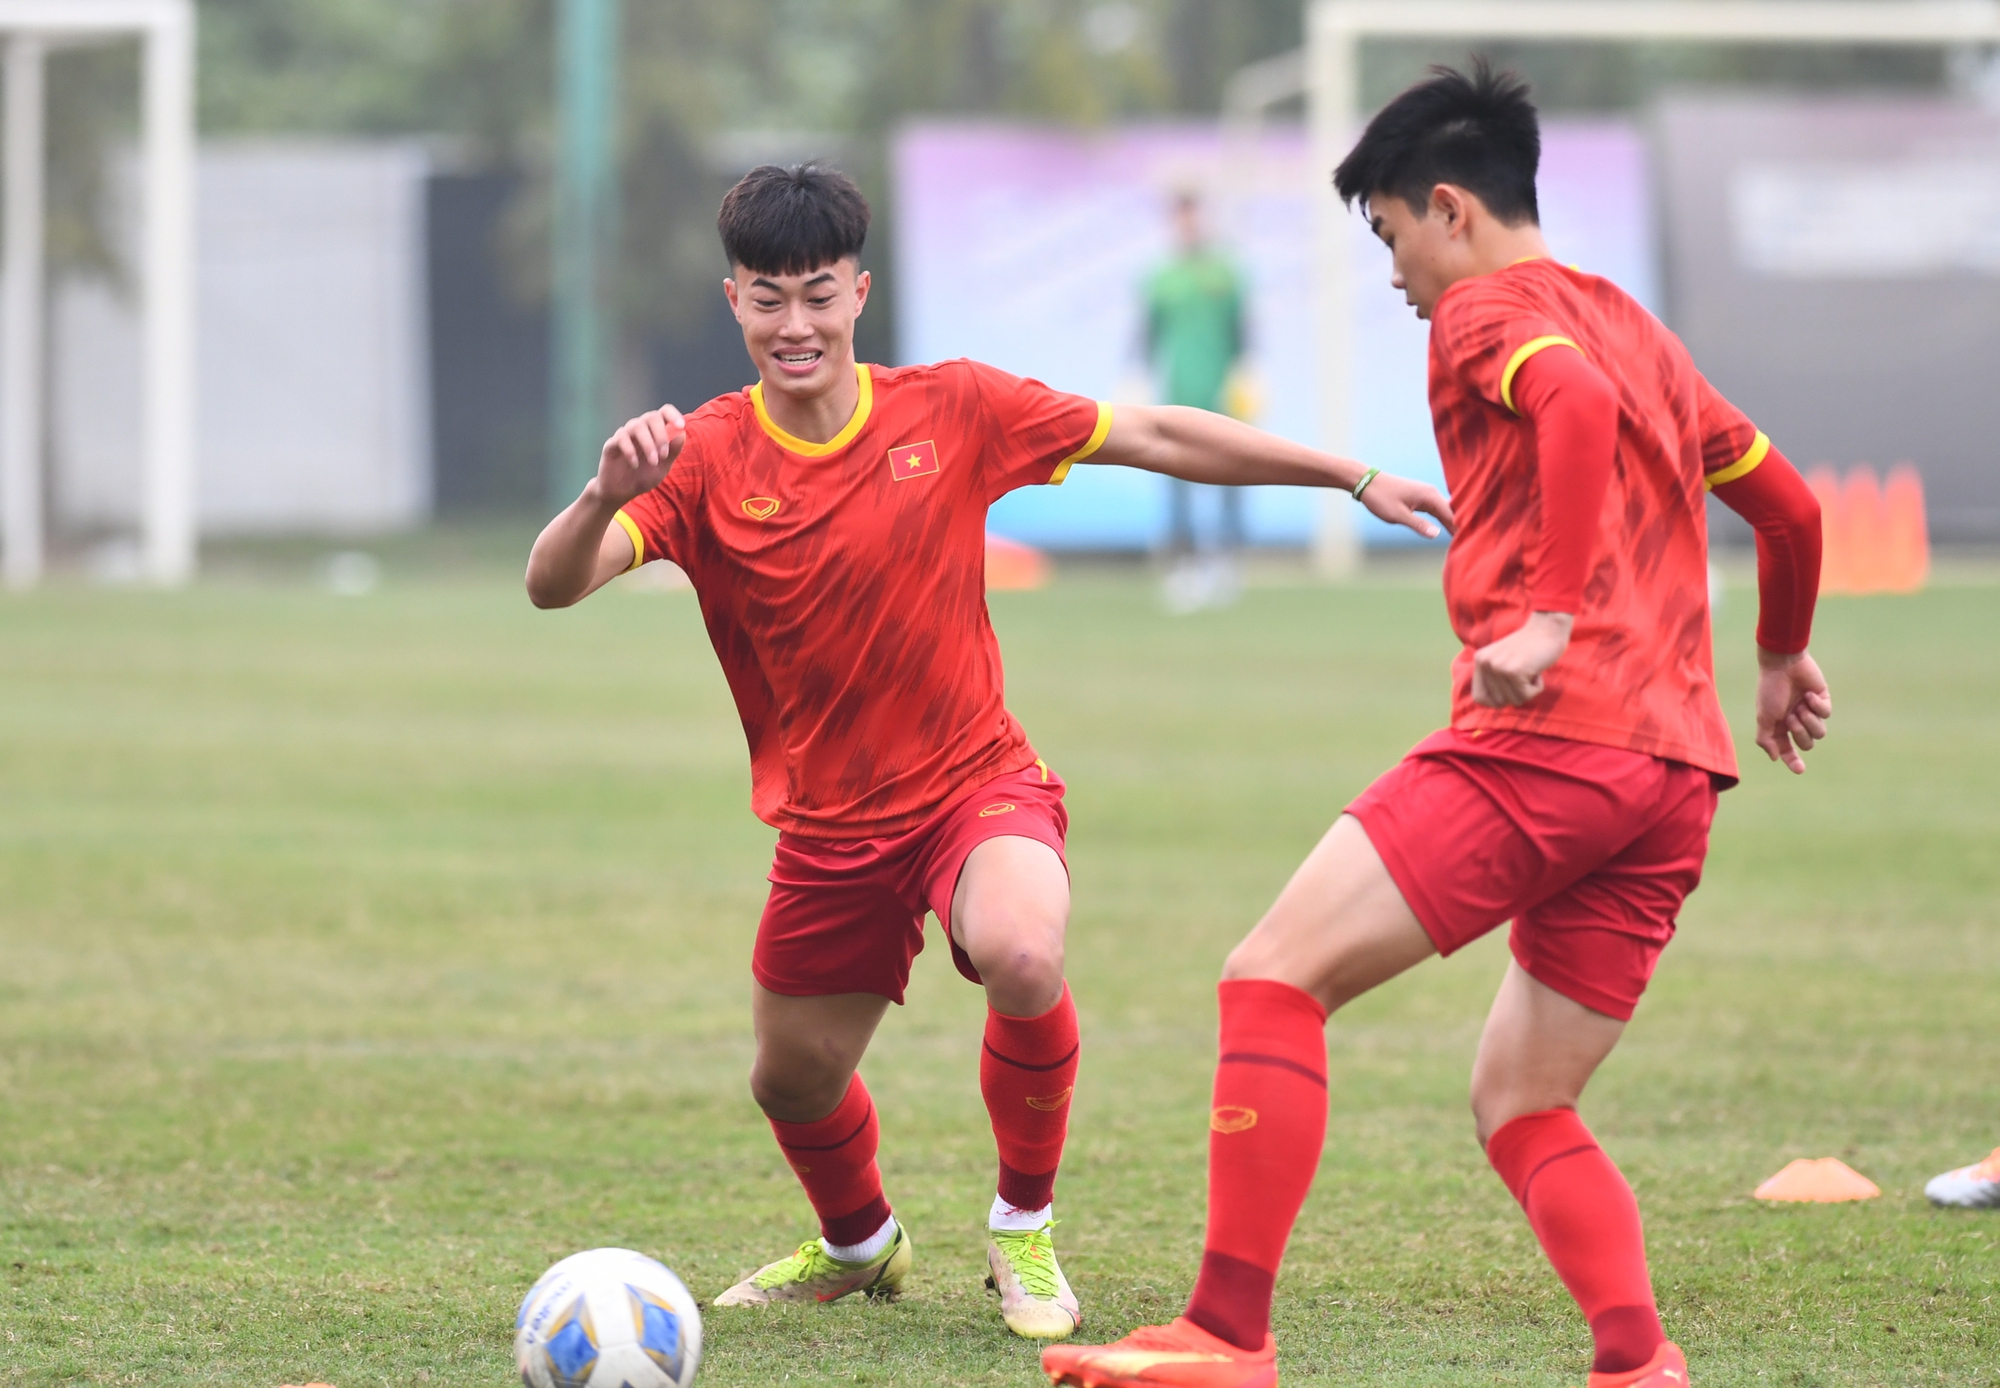 U20 Việt Nam chờ sao V.League, tập trung nhồi thể lực cho giải châu Á - Ảnh 1.